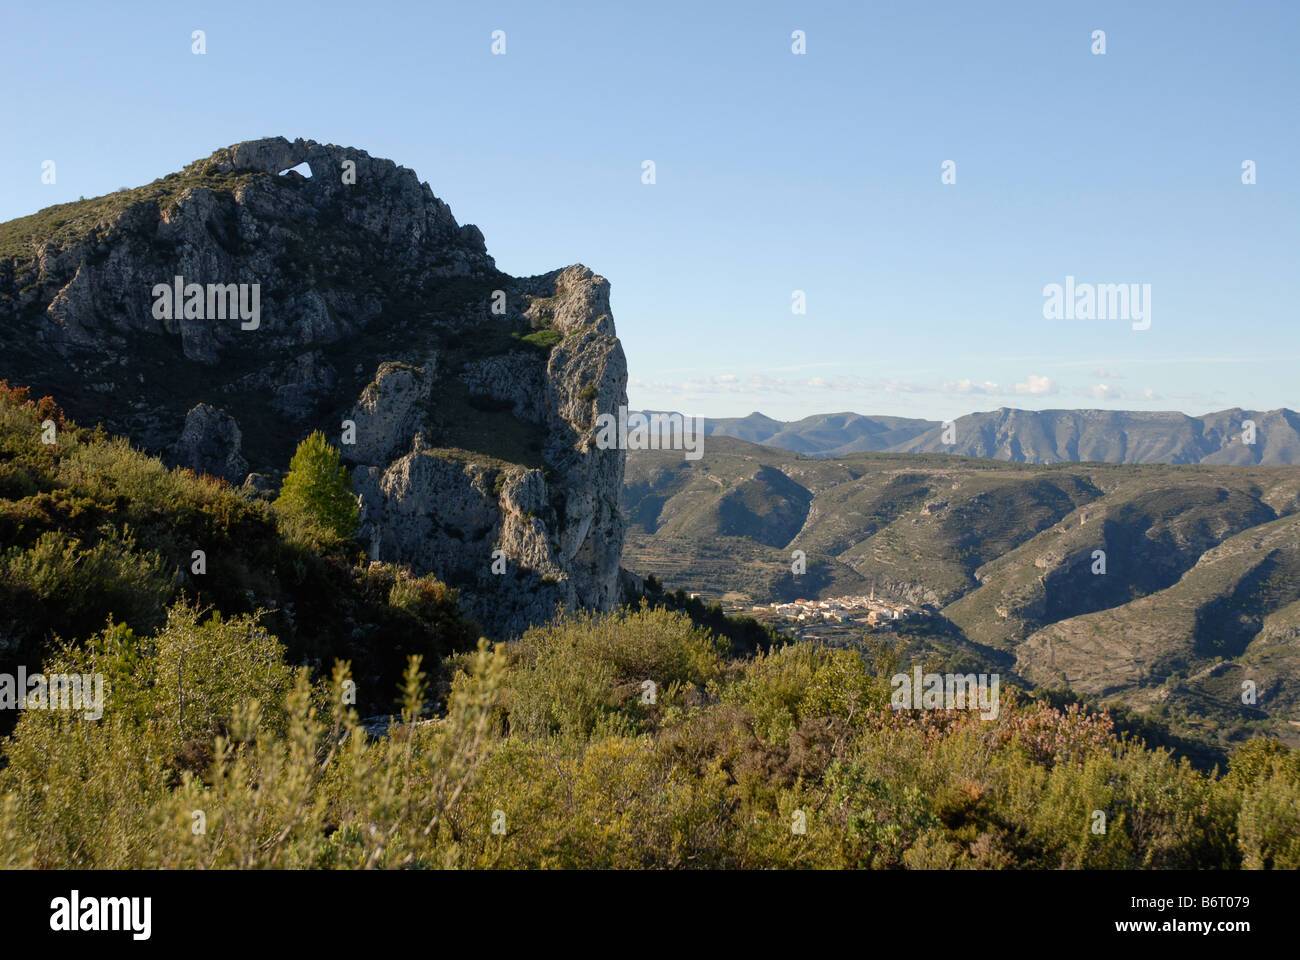 view to Forada Rock Arch & Vall de Gallinera from Sierra de la Forada, Alicante Province, Comunidad Valenciana, Spain Stock Photo